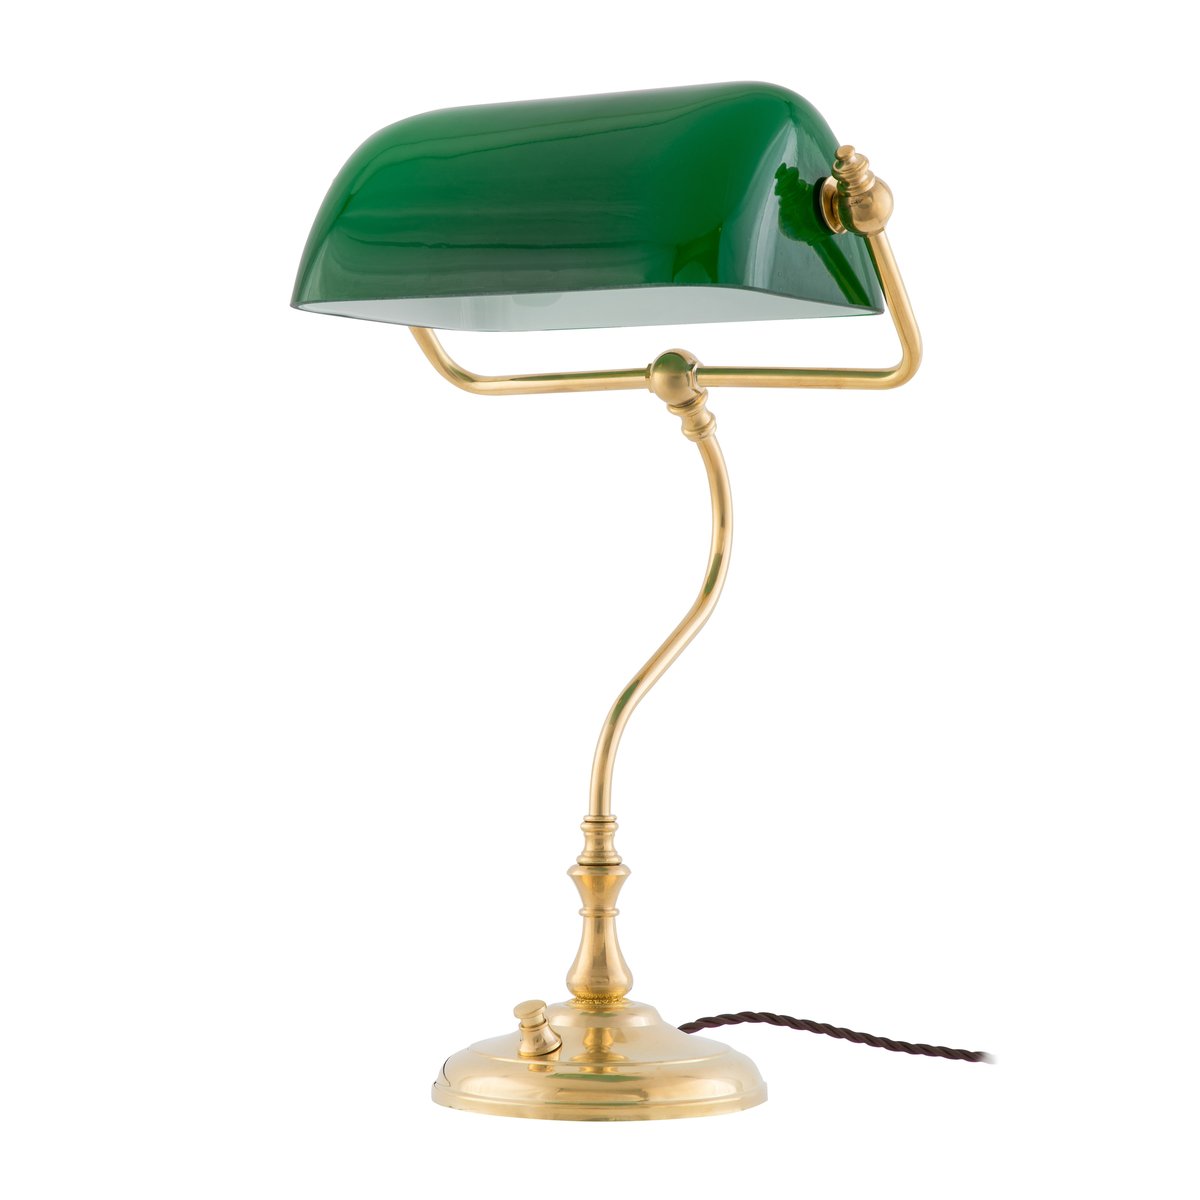 Bilde av Karlskrona Lampfabrik Energismart bordlampe Messing-grønn